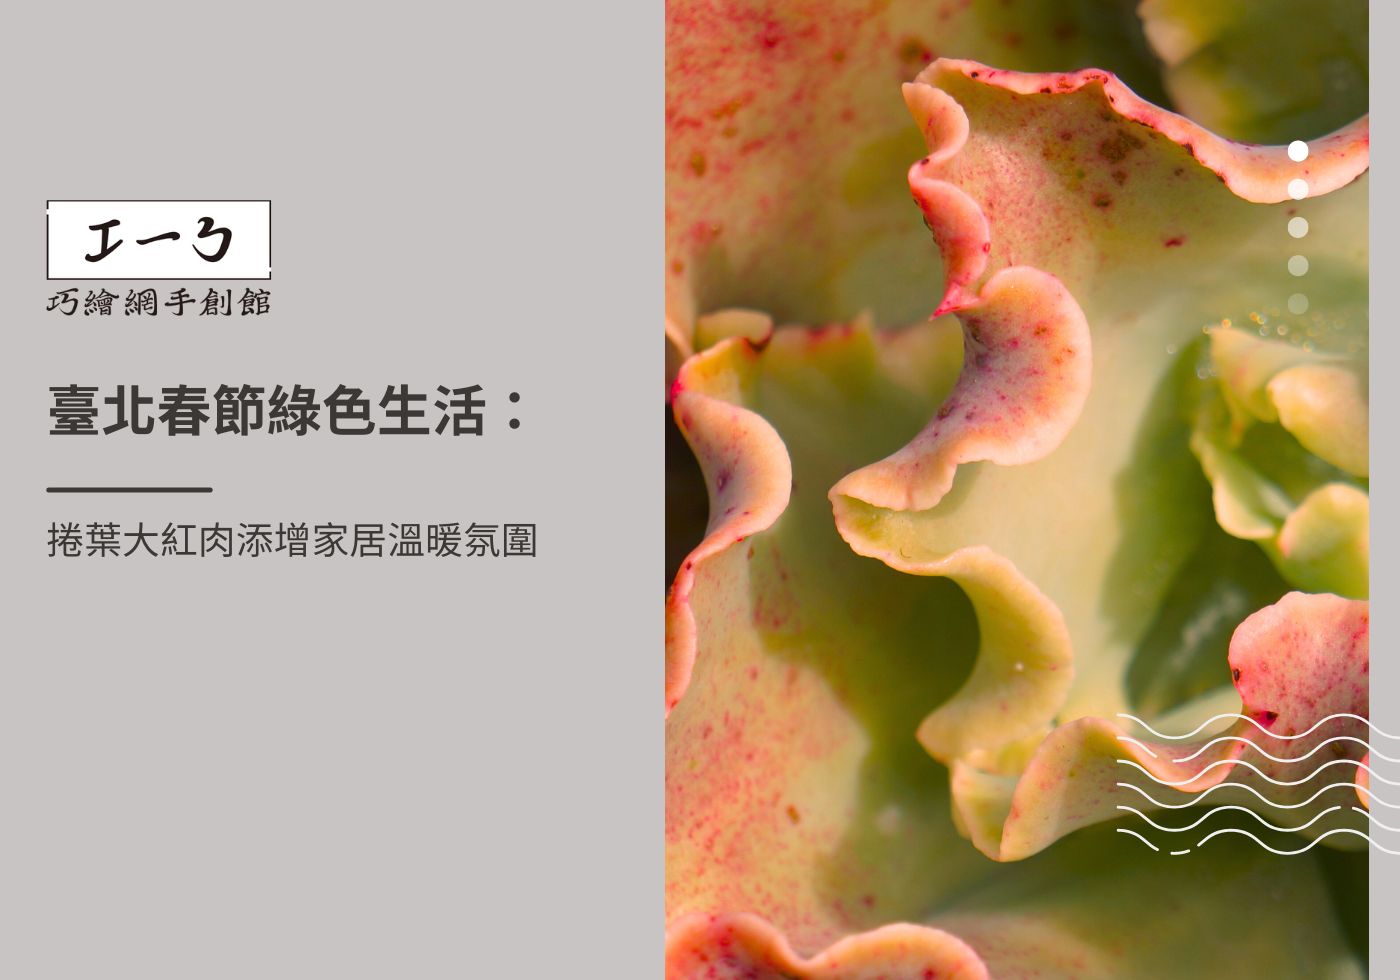 您目前正在查看 臺北春節綠色生活：捲葉大紅肉添增家居溫暖氛圍